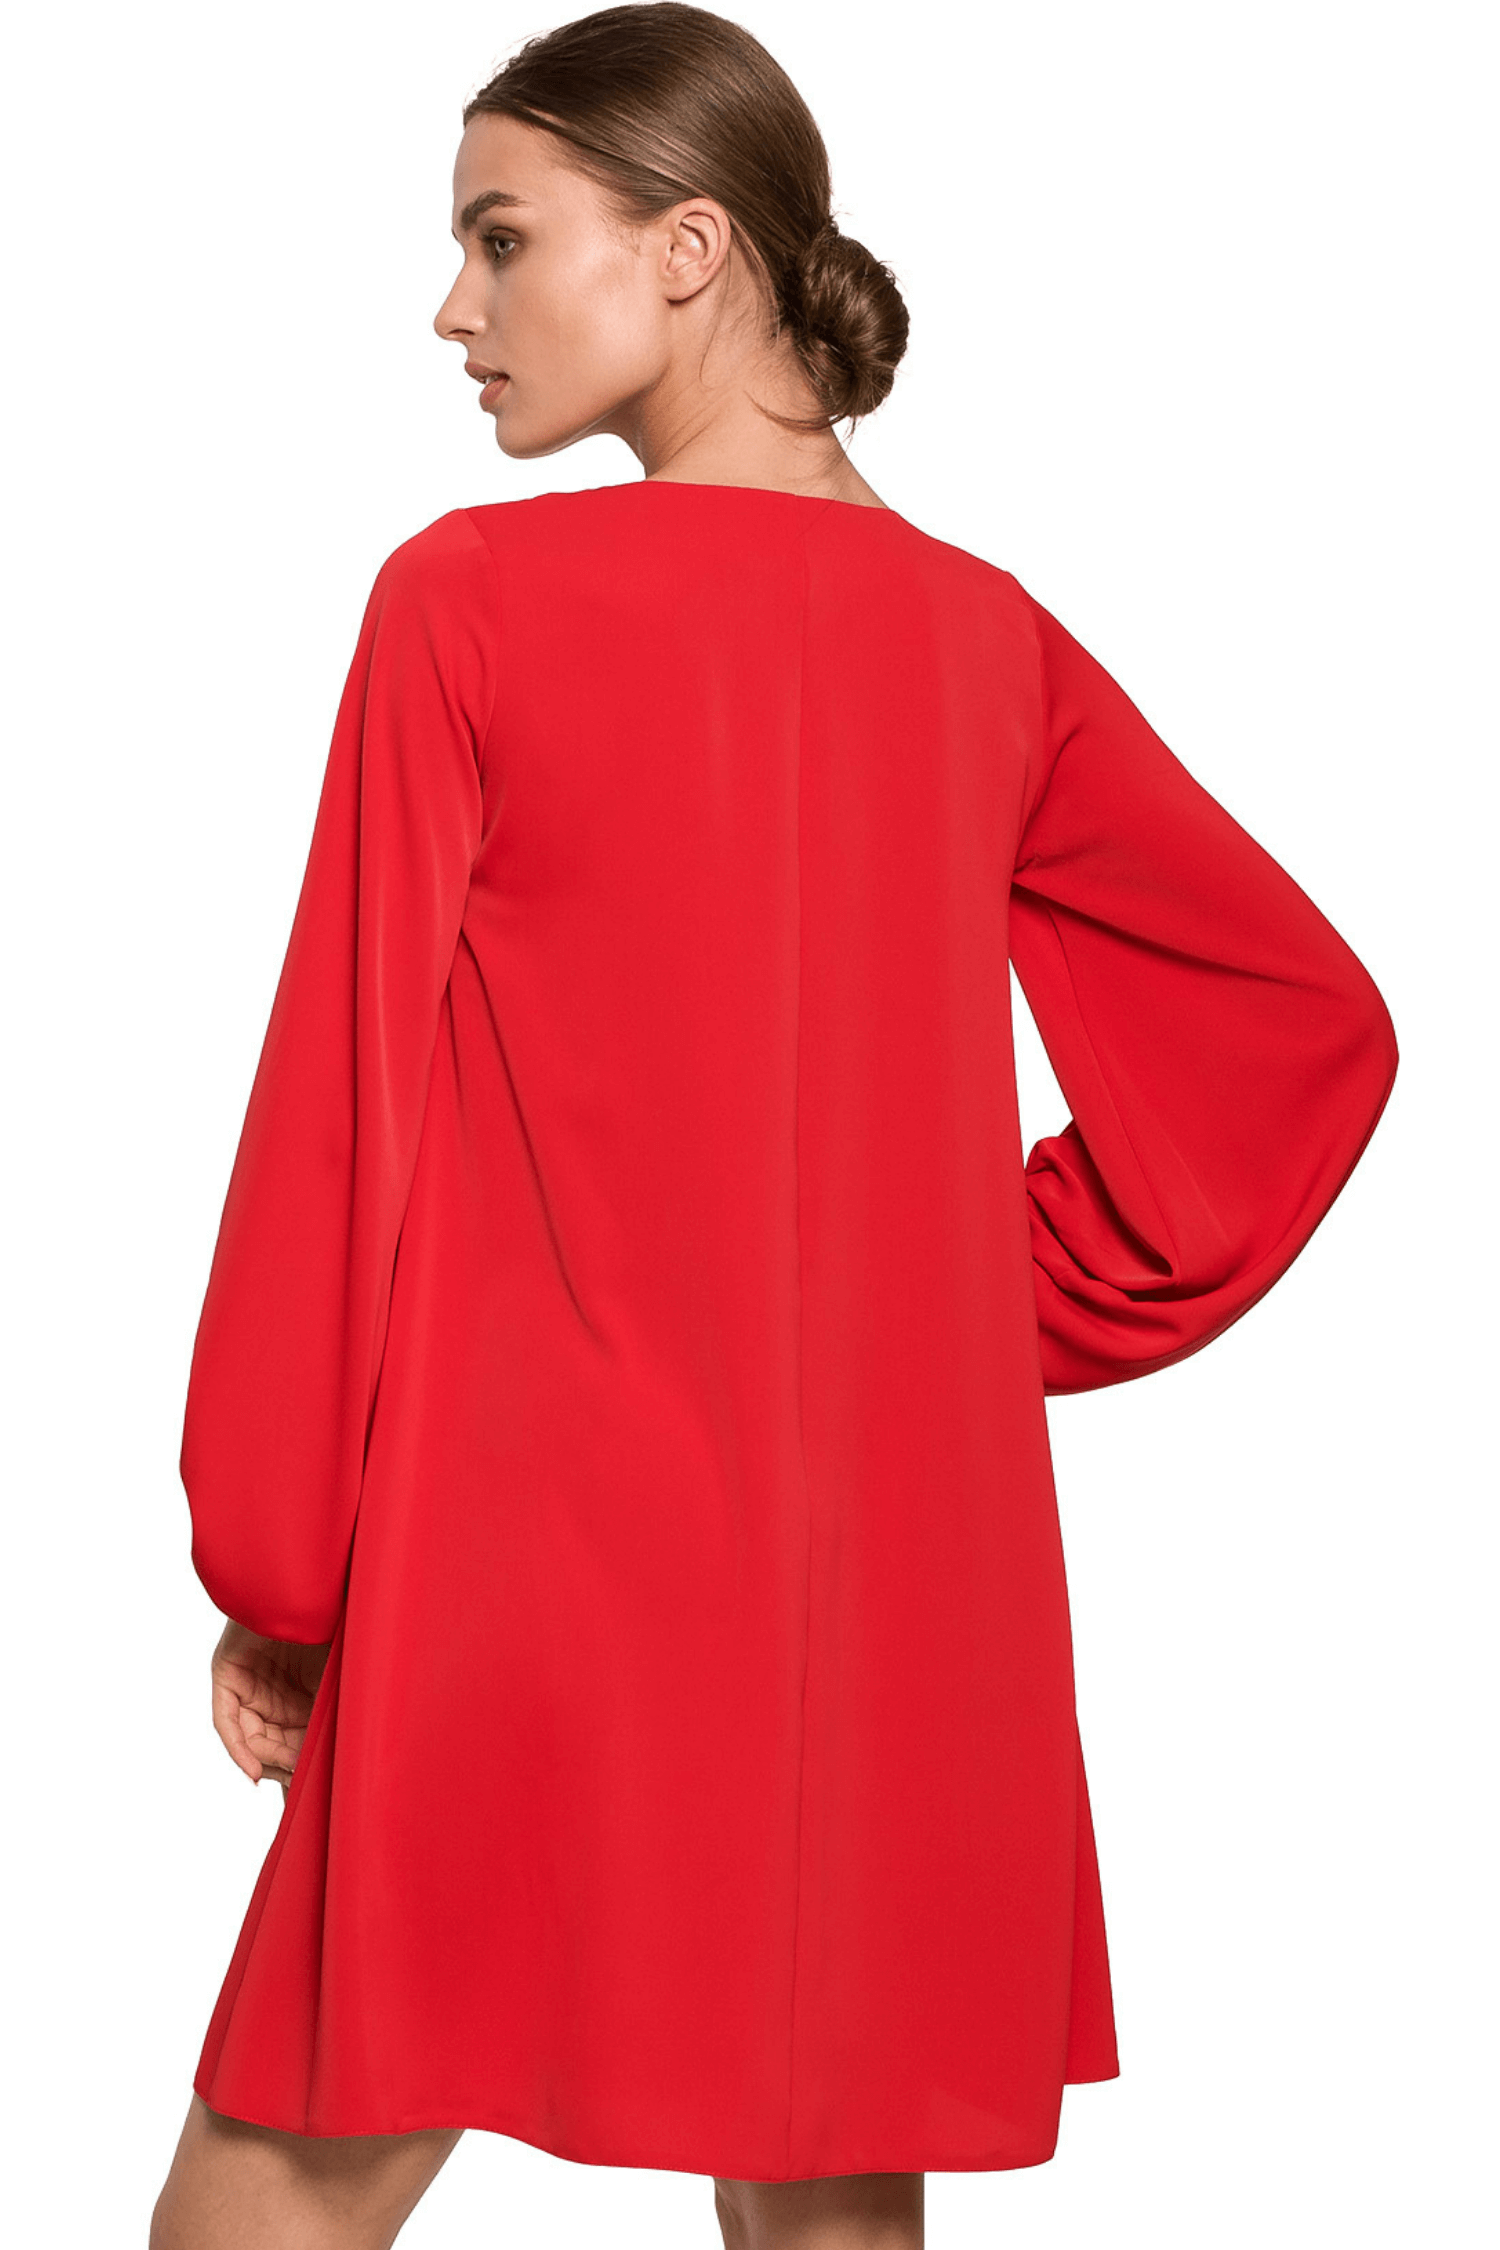 Opis: Elegancka sukienka trapezowa z bufiastymi rękawami dekolt V czerwona.